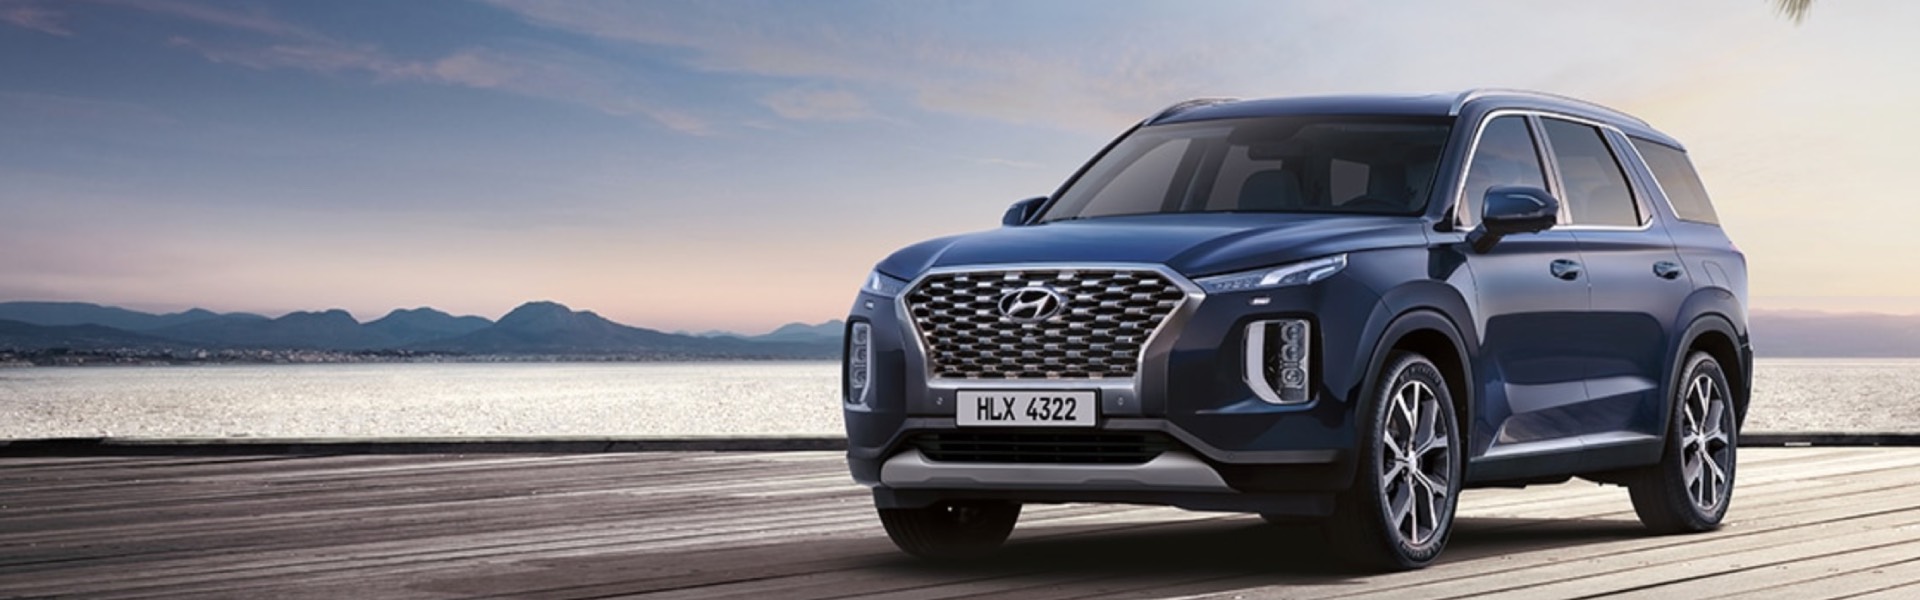 Моделі Hyundai номіновані на премію “Авто року в Україні”